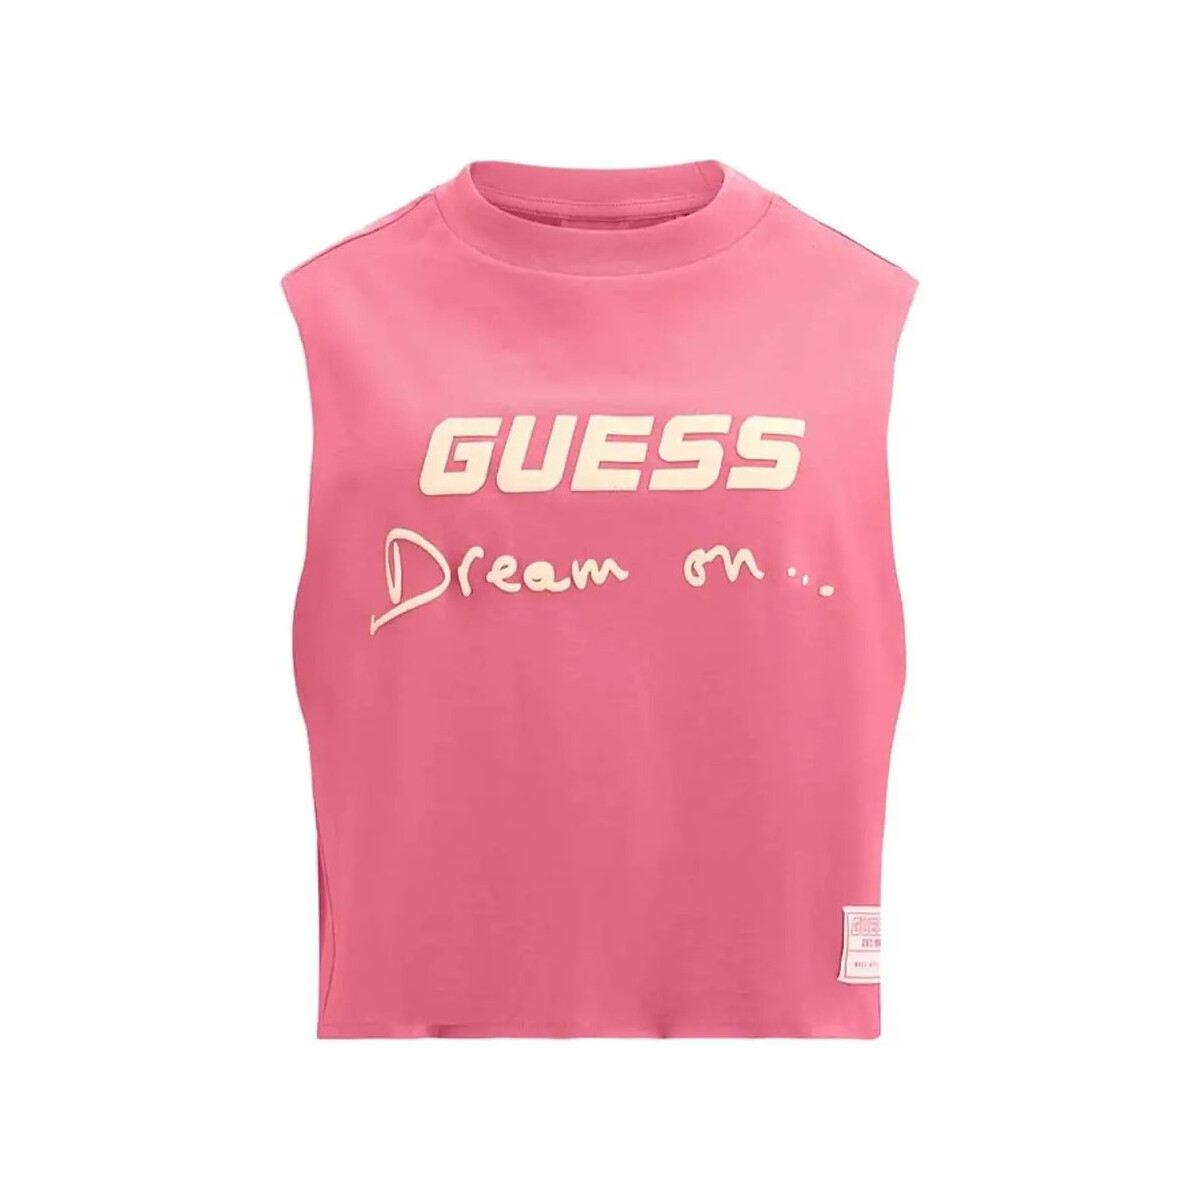 Vêtements Femme Débardeurs / T-shirts sans manche Guess Dream on style Rose